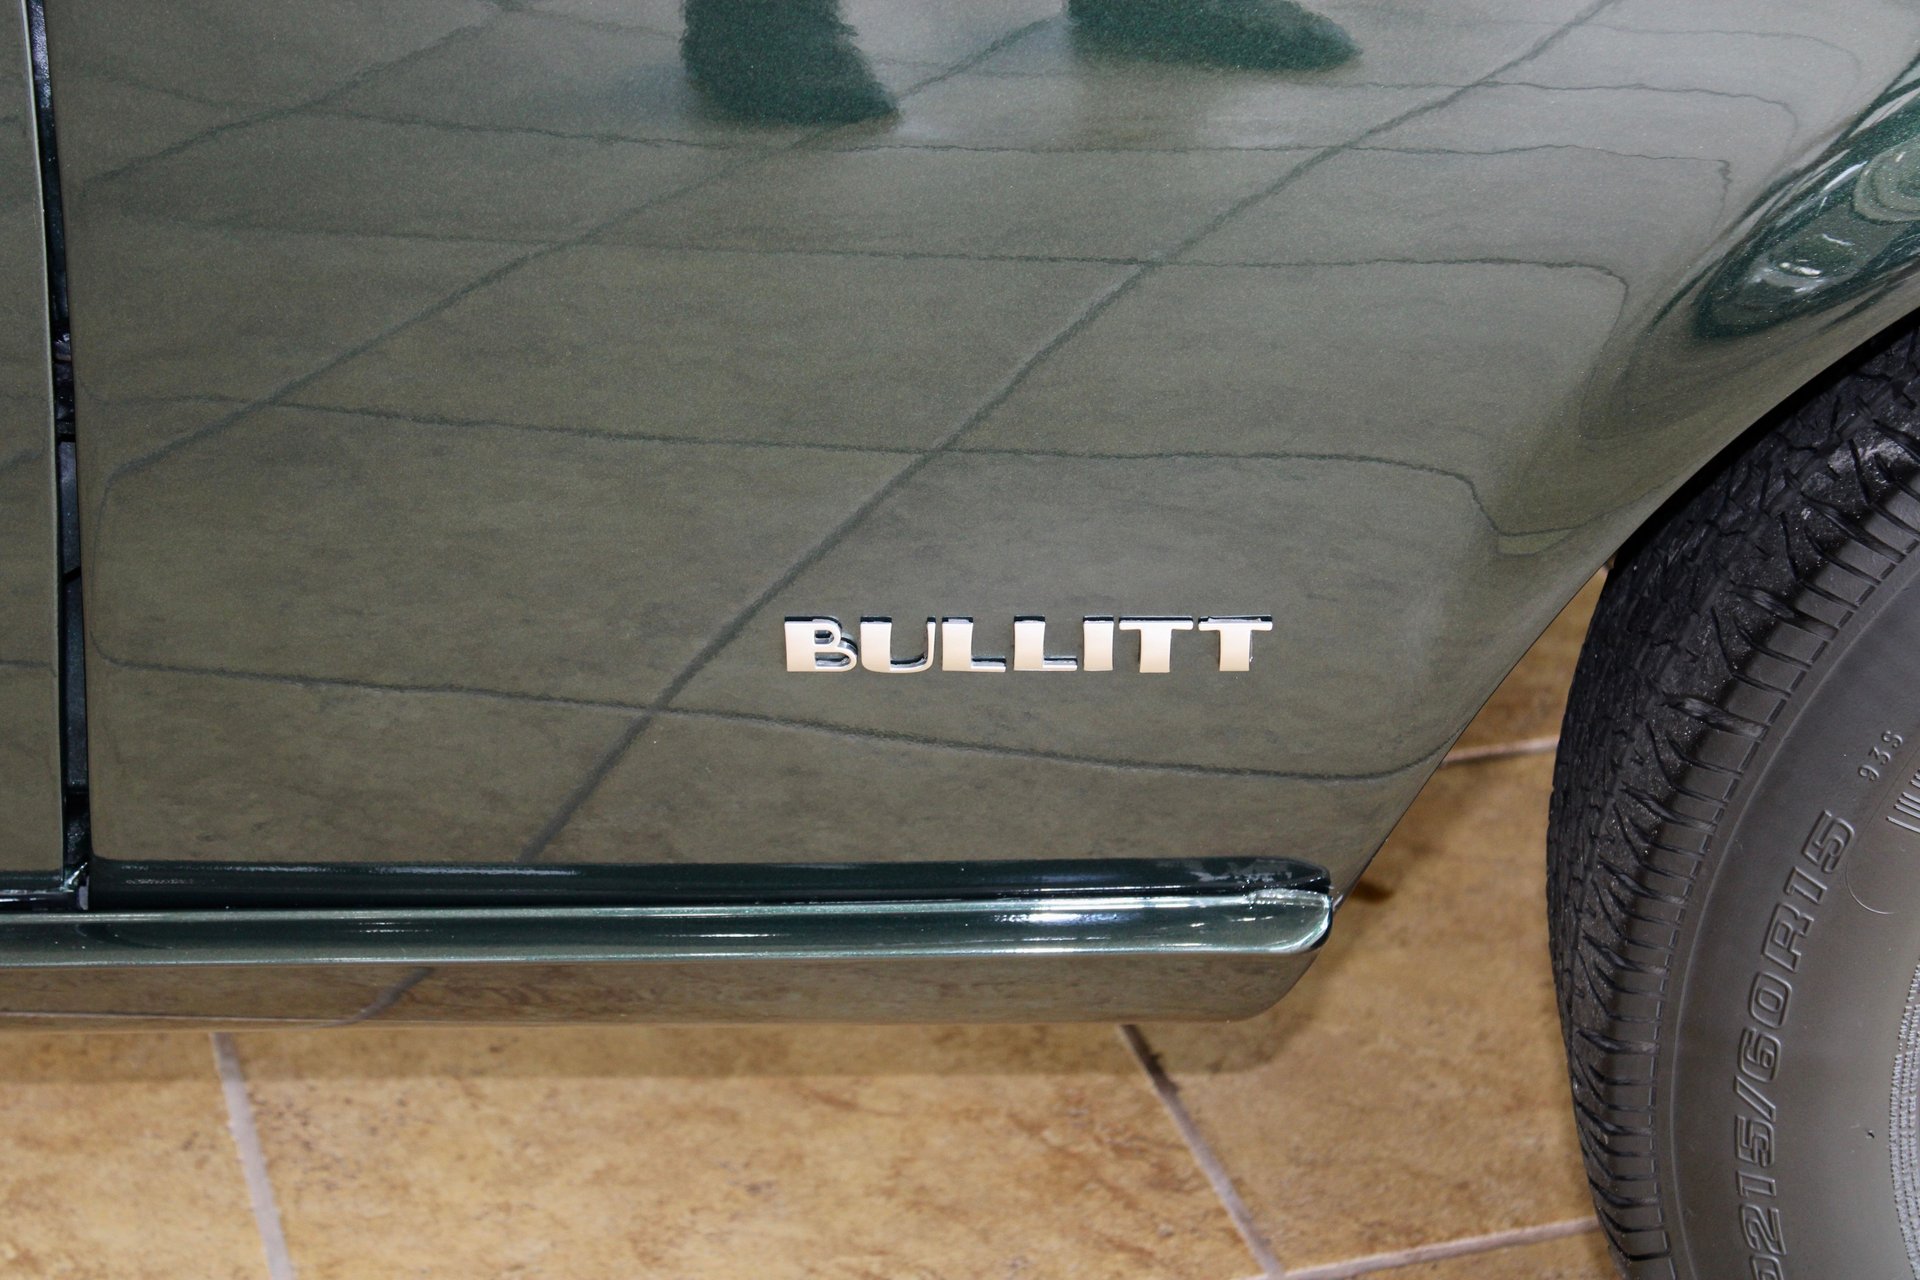 For Sale 1968 Ford Mustang Bullitt